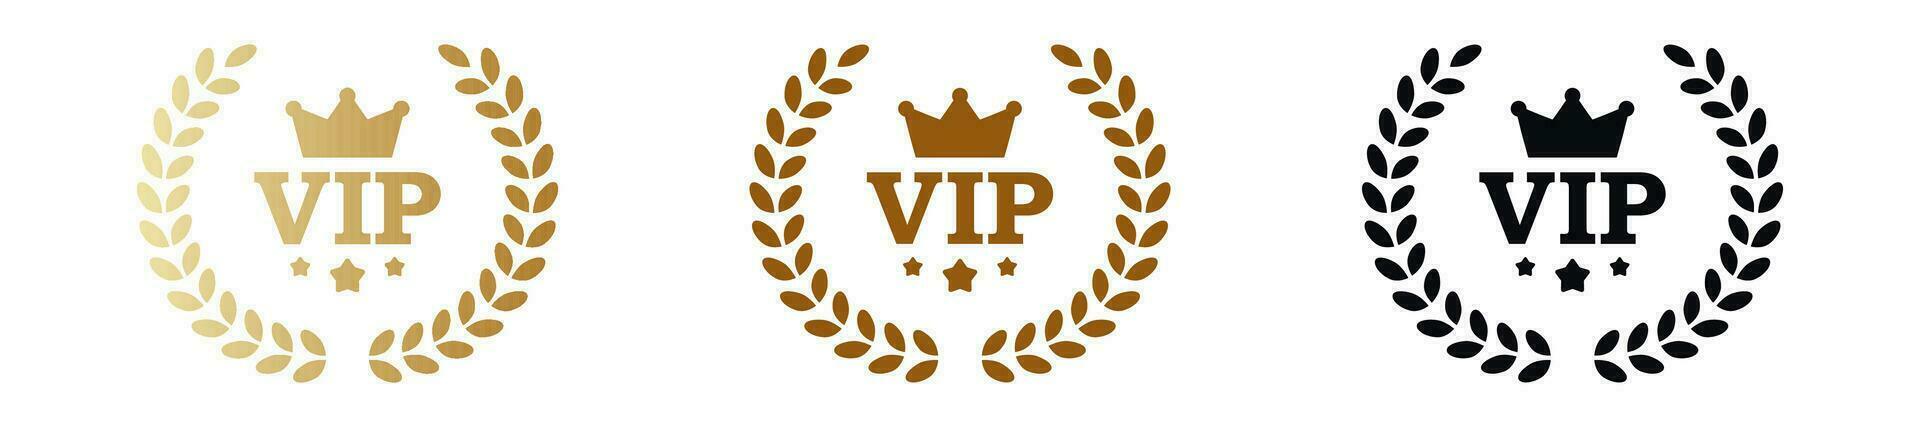 Vip user stamp.  Premium member pass. vector